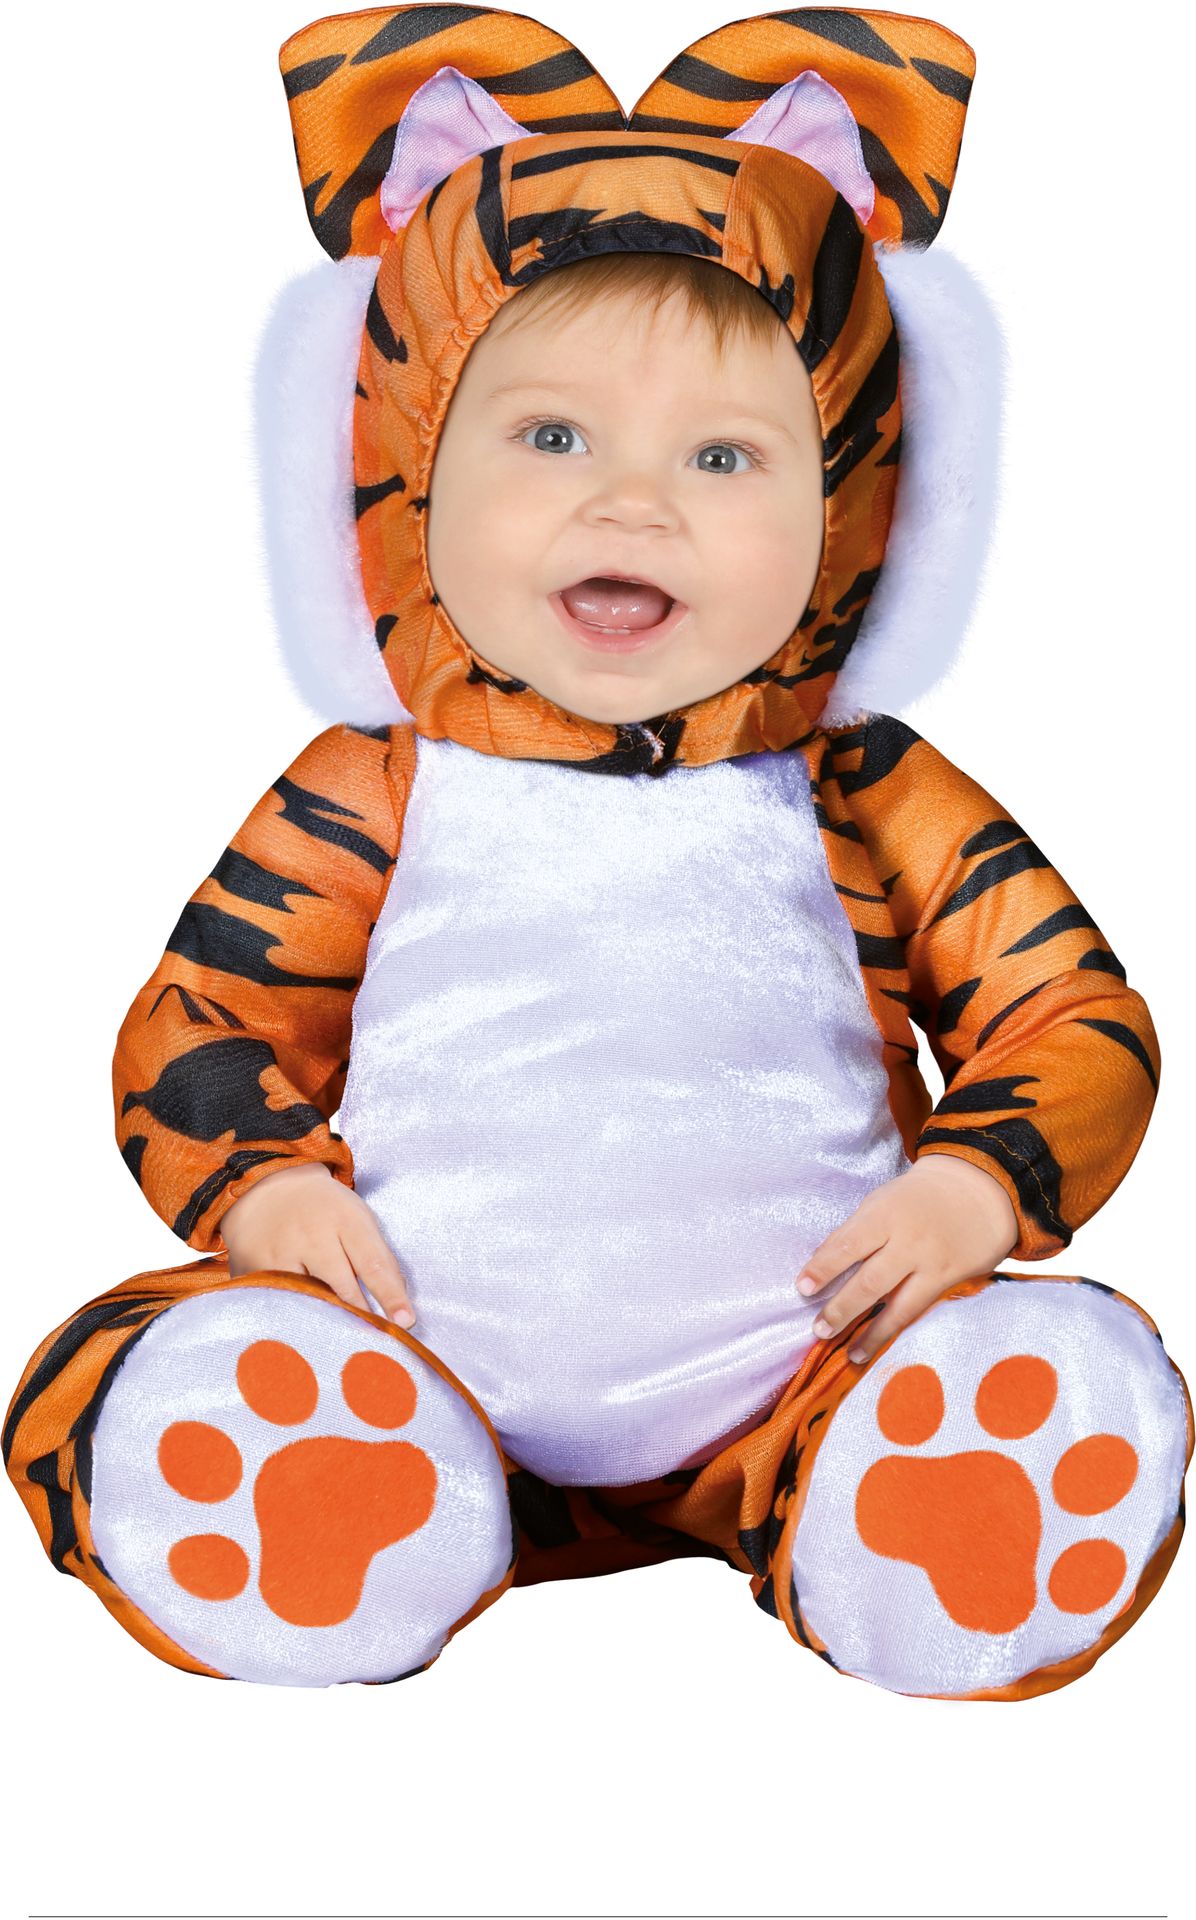 Baby tijger kostuum